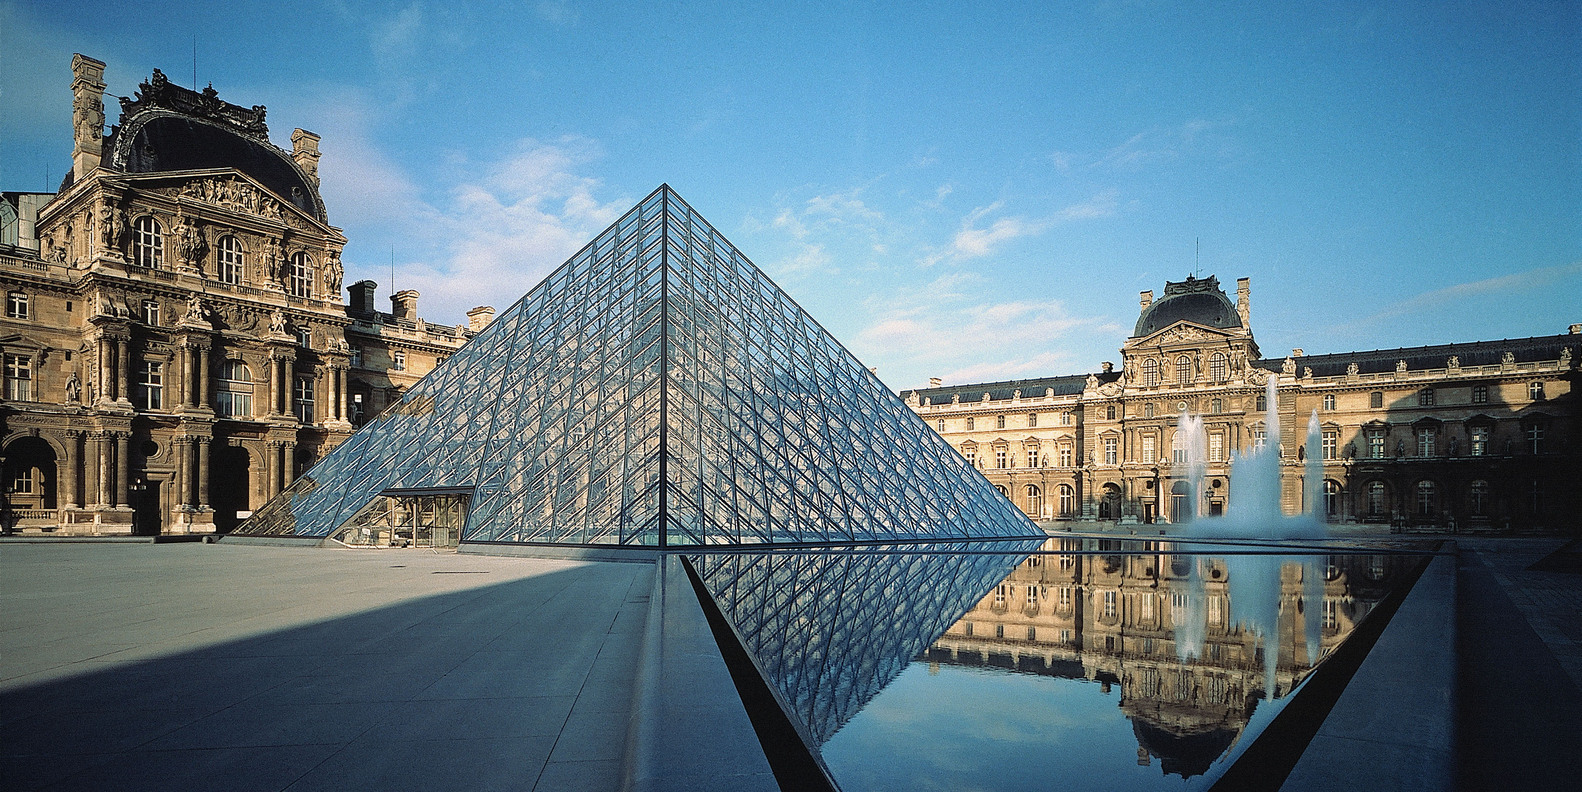 Tour du lịch từ Sài Gòn đến Châu Âu: Tham quan bảo tàng Louvre cất giữ nhiều bảo vật